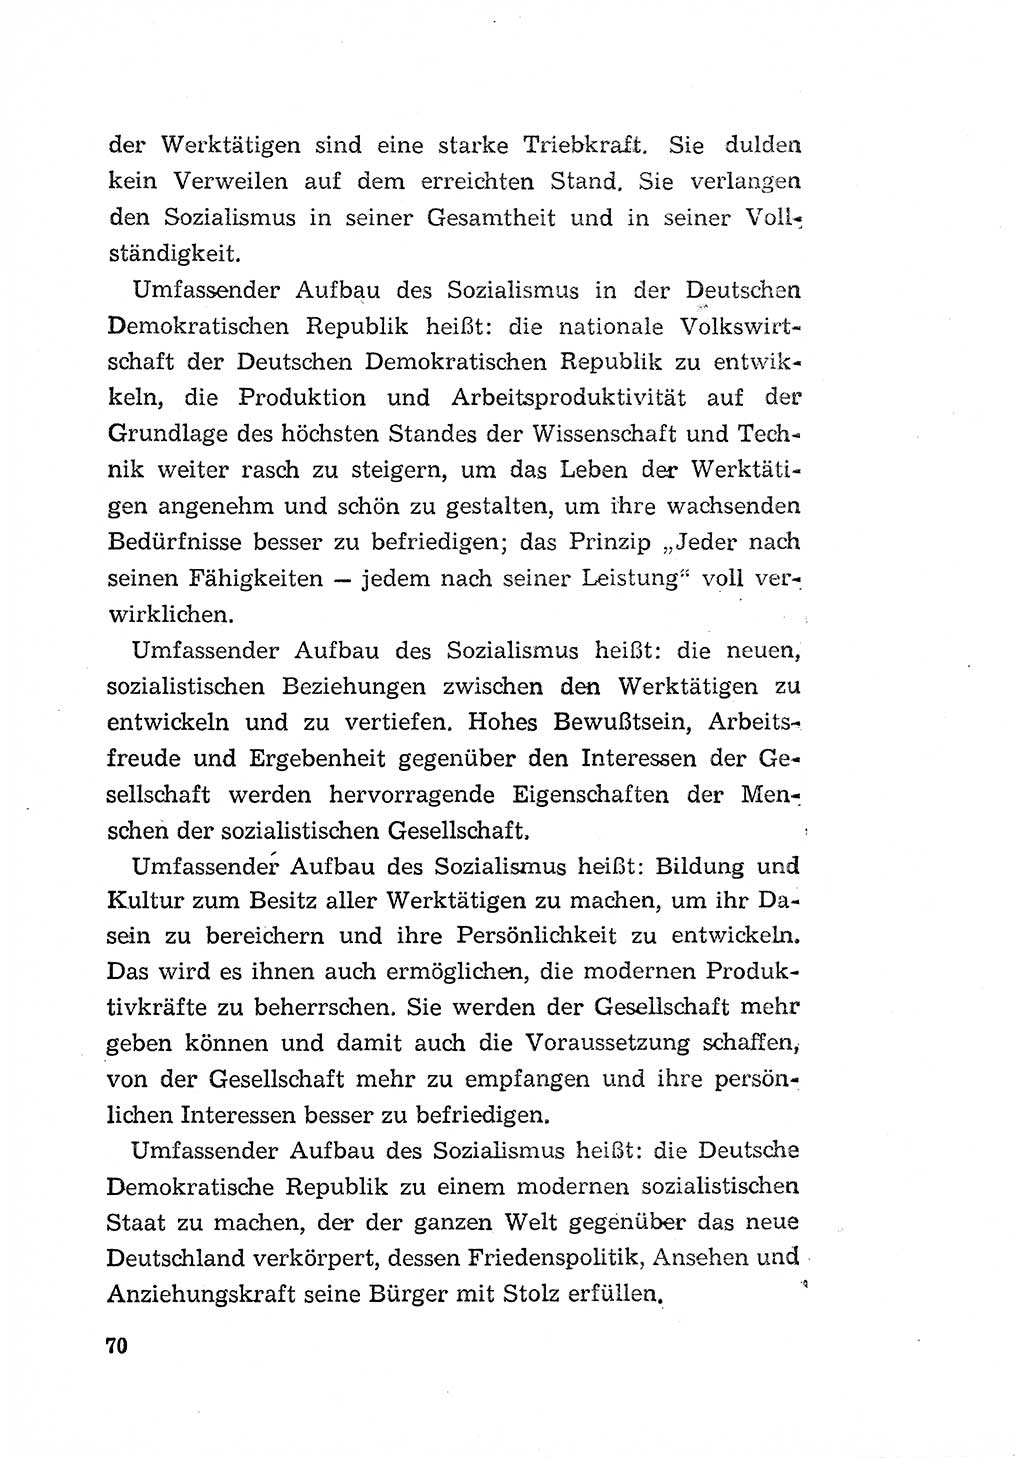 Programm der Sozialistischen Einheitspartei Deutschlands (SED) [Deutsche Demokratische Republik (DDR)] 1963, Seite 70 (Progr. SED DDR 1963, S. 70)